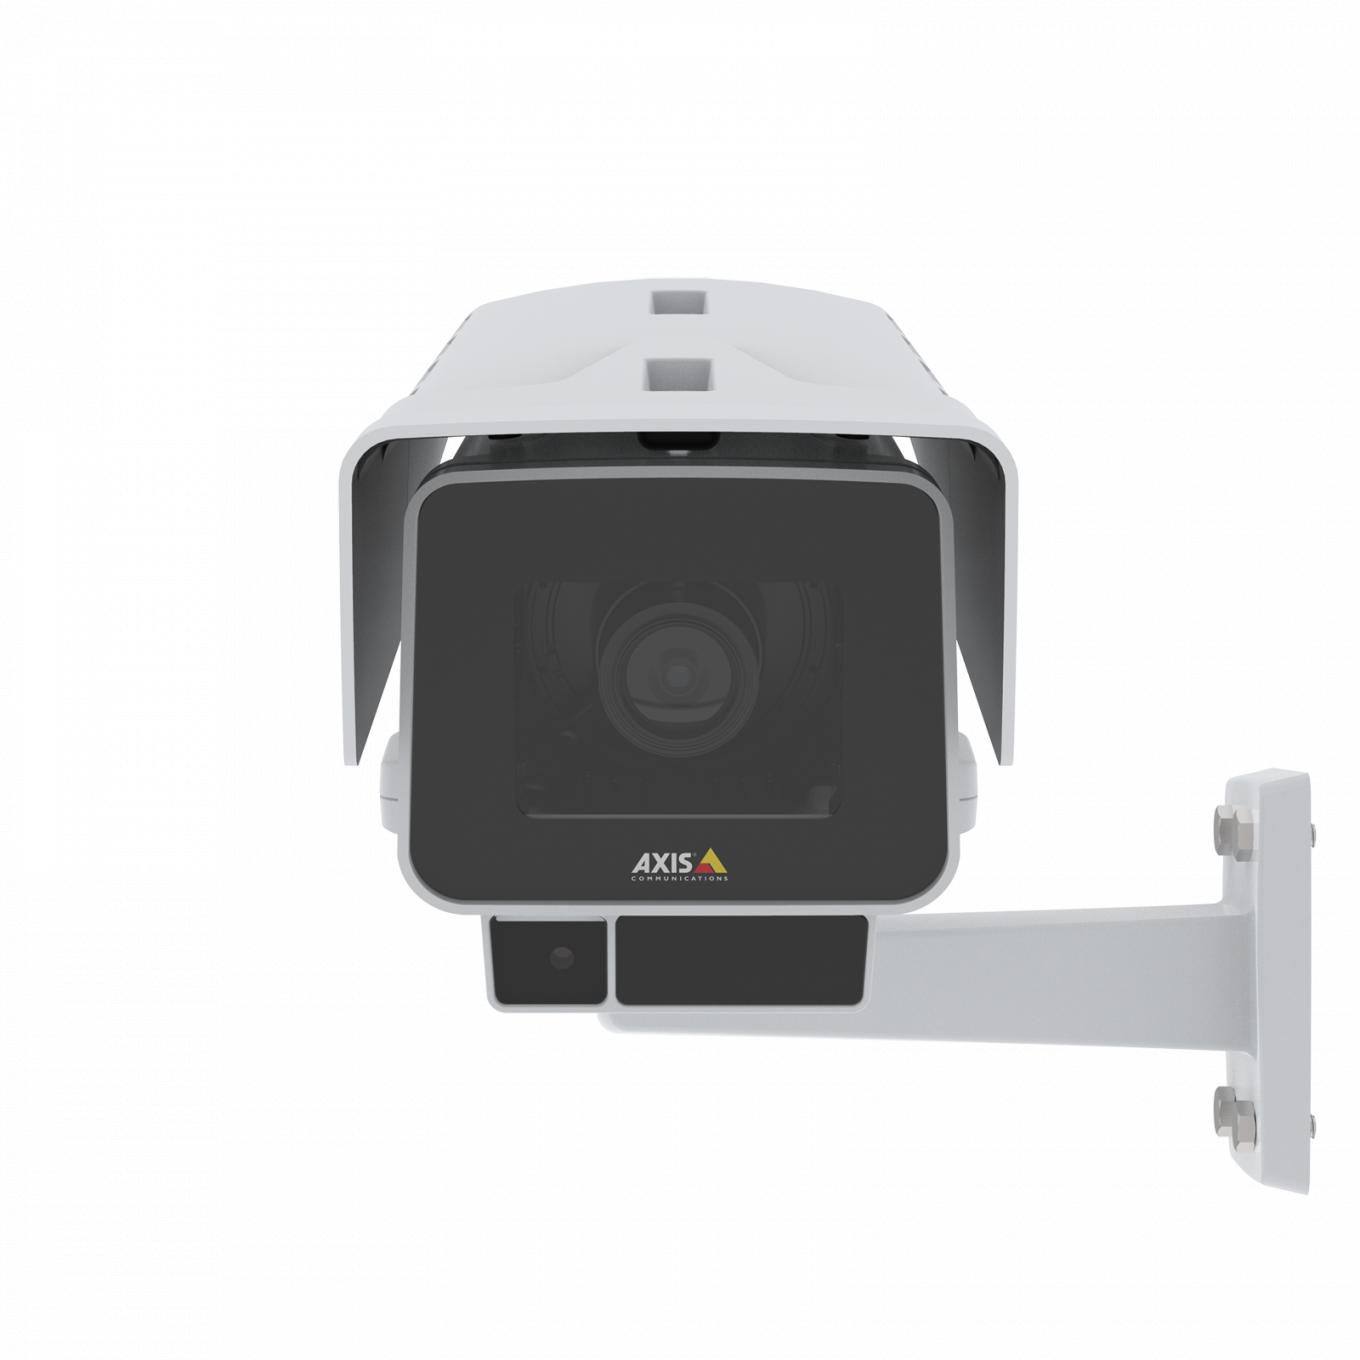 La AXIS P1378-LE IP Camera tiene estabilización de imagen electrónica y OptimizedIR. El producto se muestra con vista frontal.